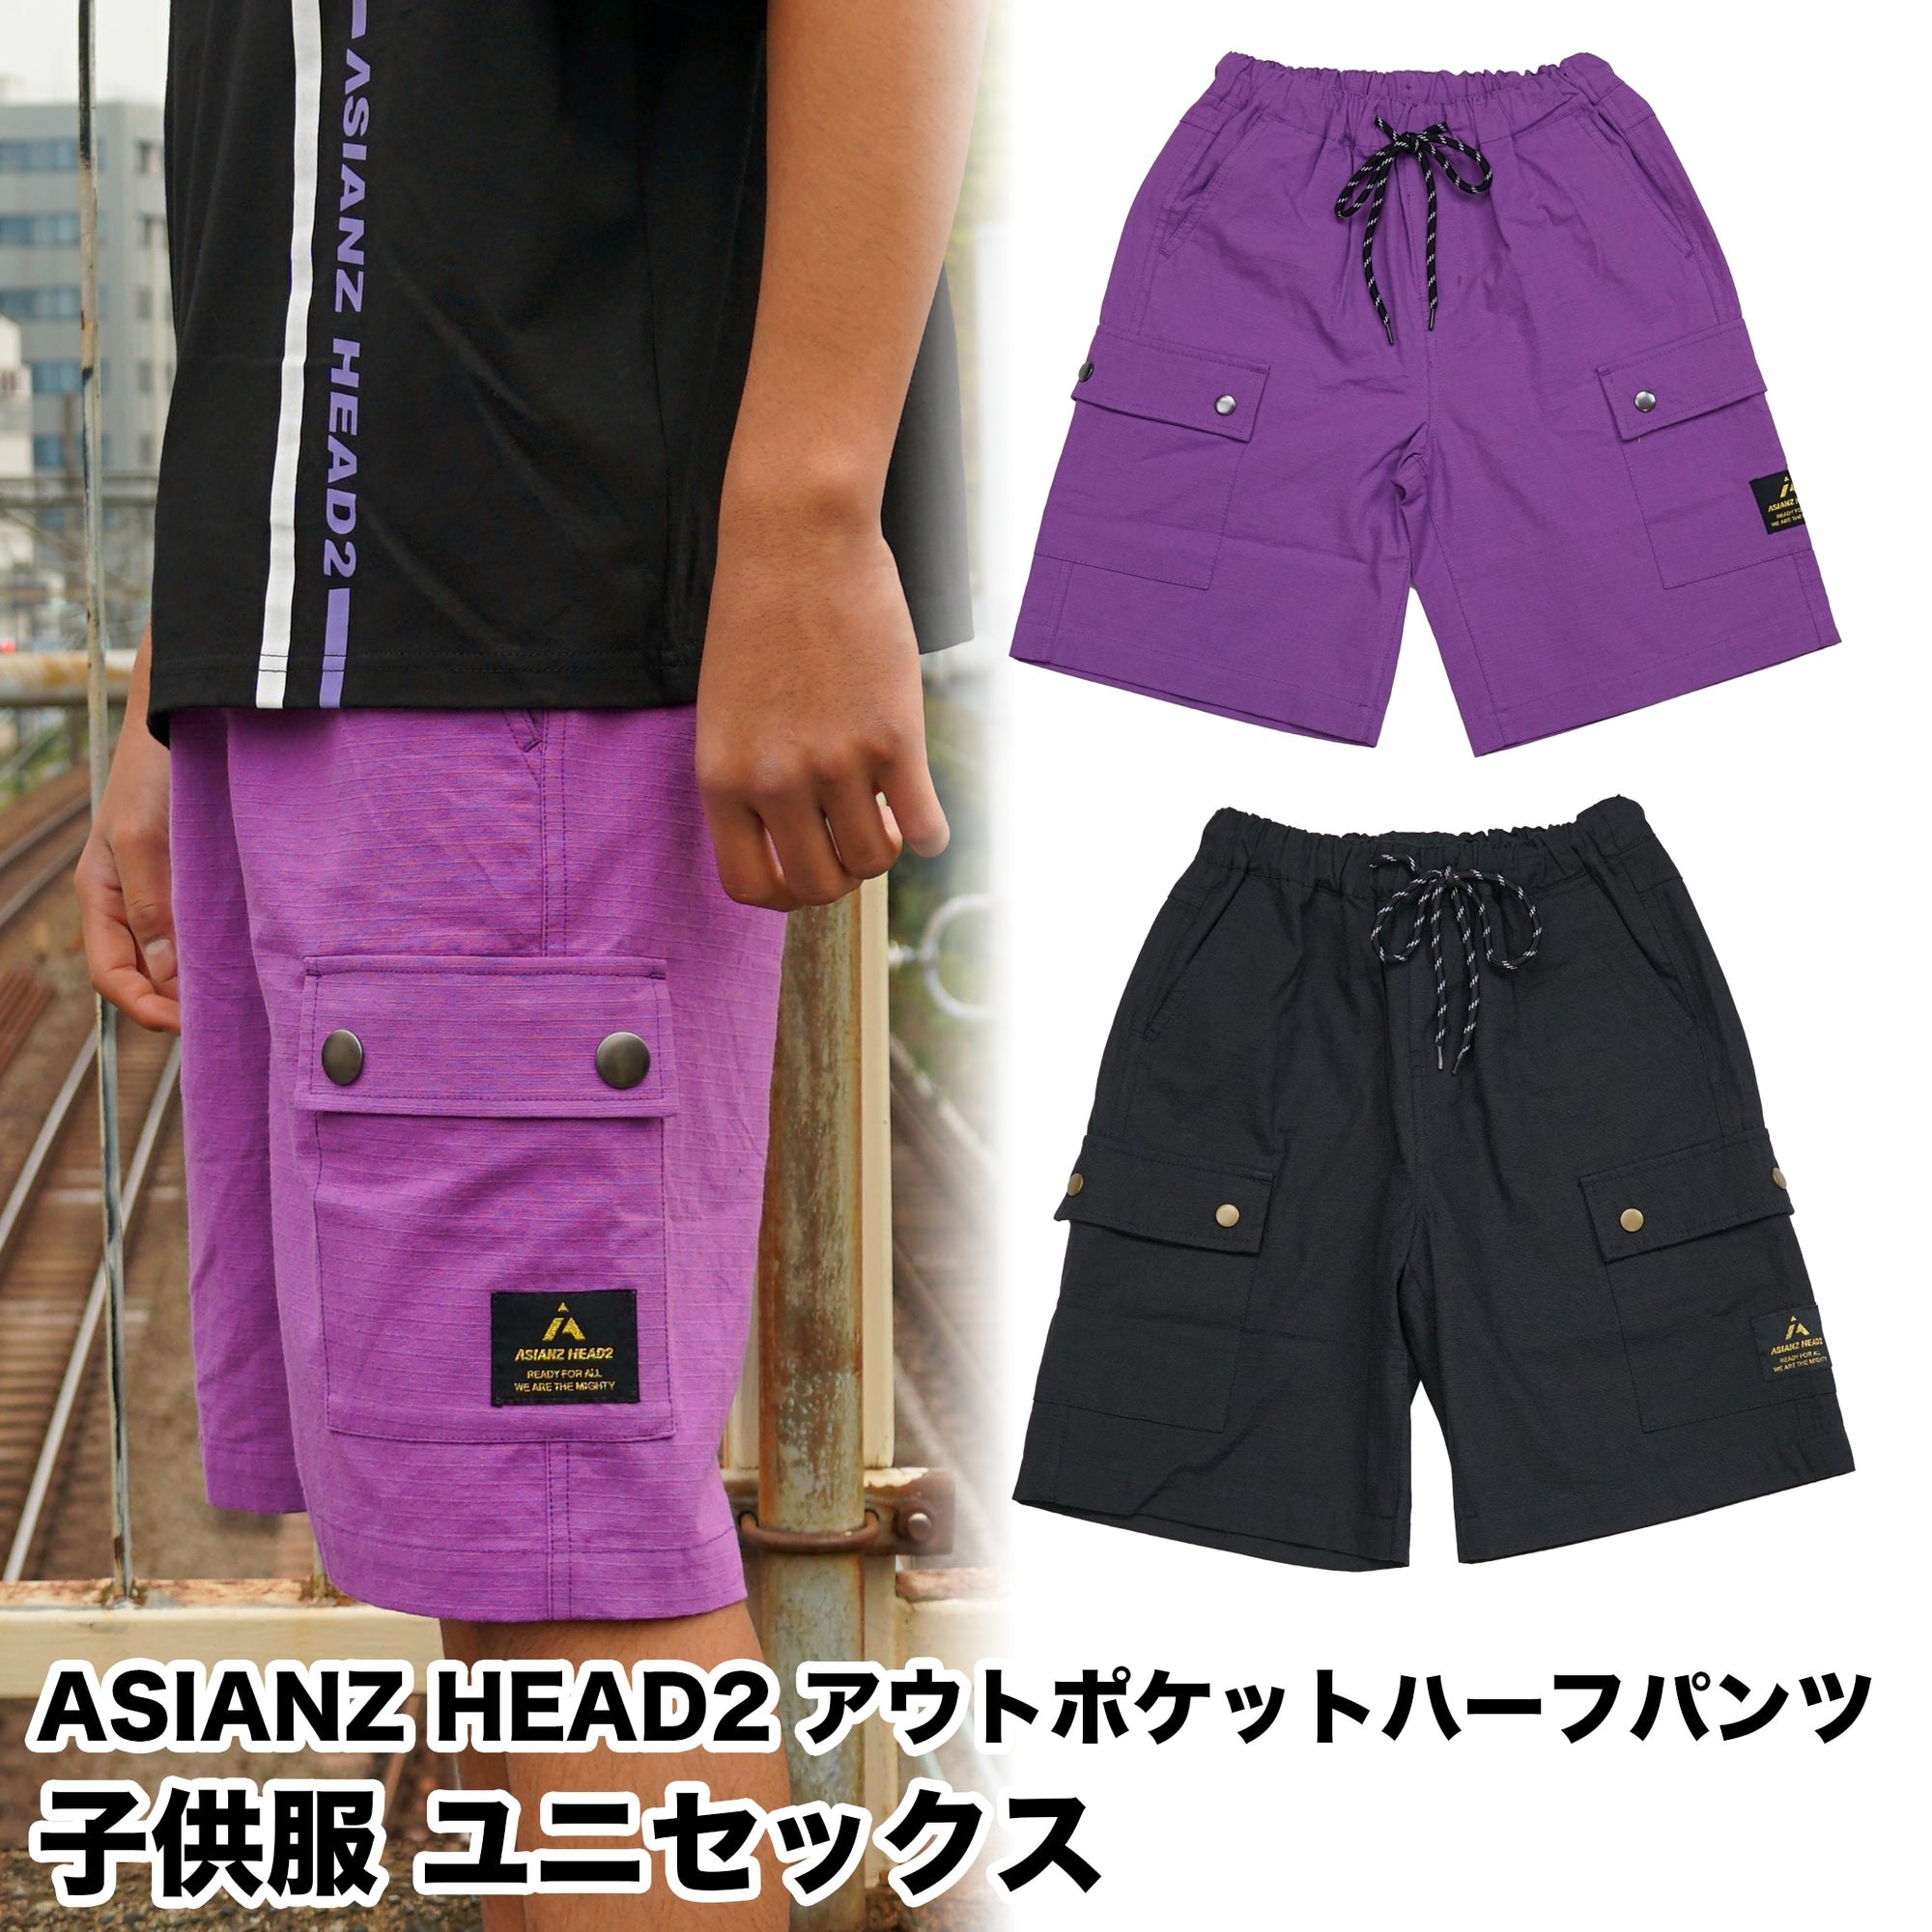 (40%オフ! セール商品)ASIANZ HEAD2 アウトポケットハーフパンツ キッズウェアー